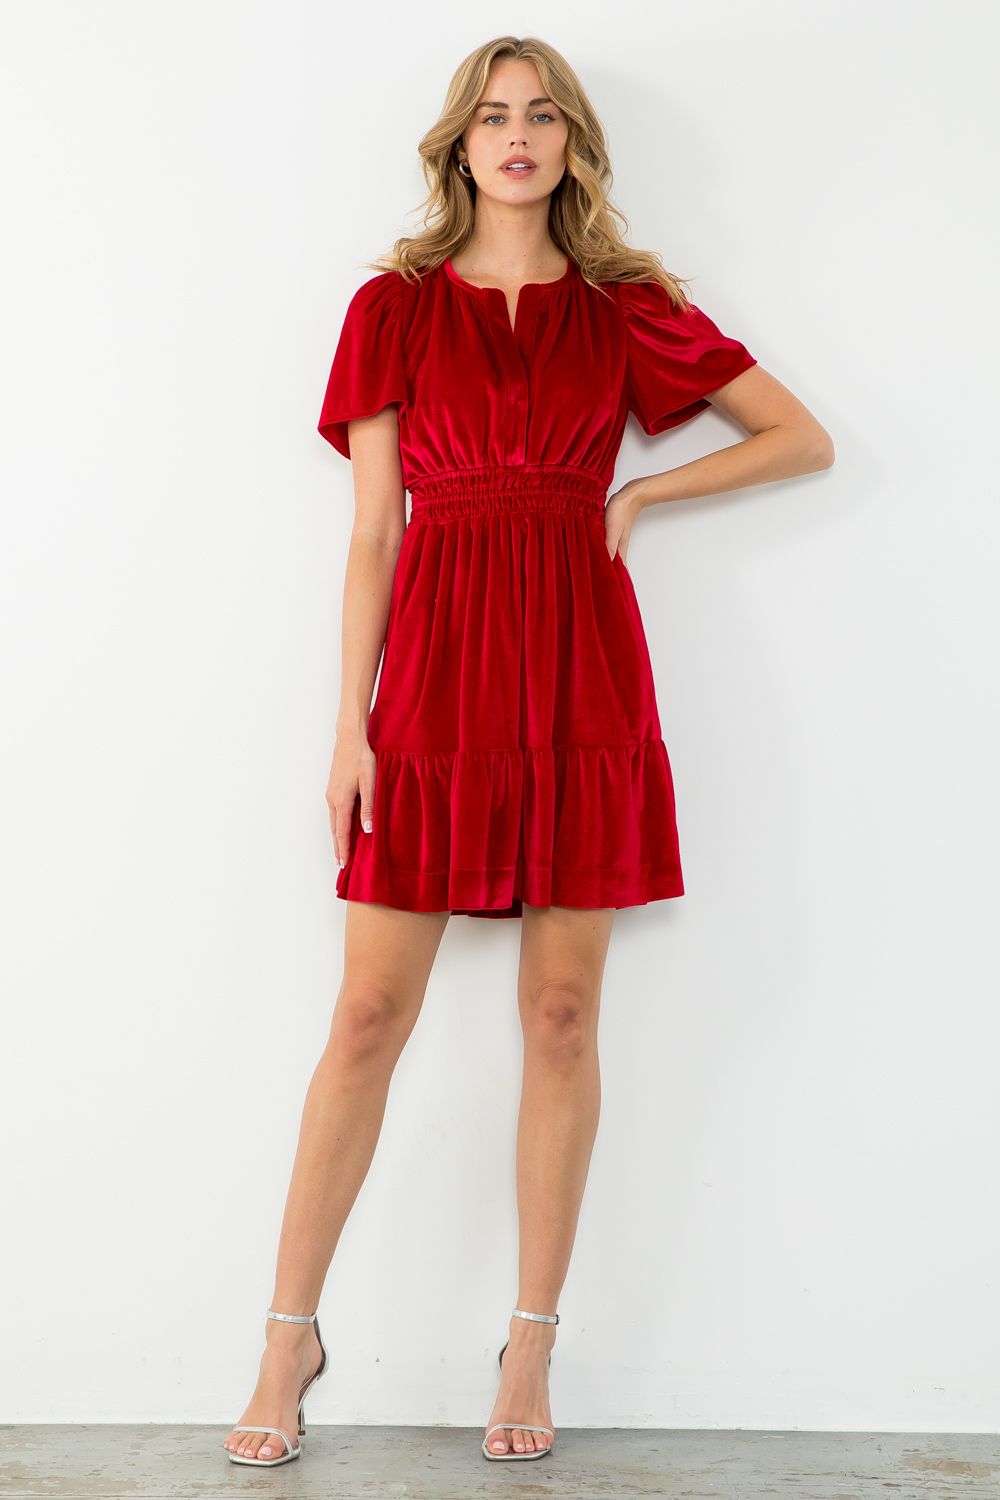 Short Sleeve Solid Color Velvet ALine Dress Casual Party Dress for Women |  eBay